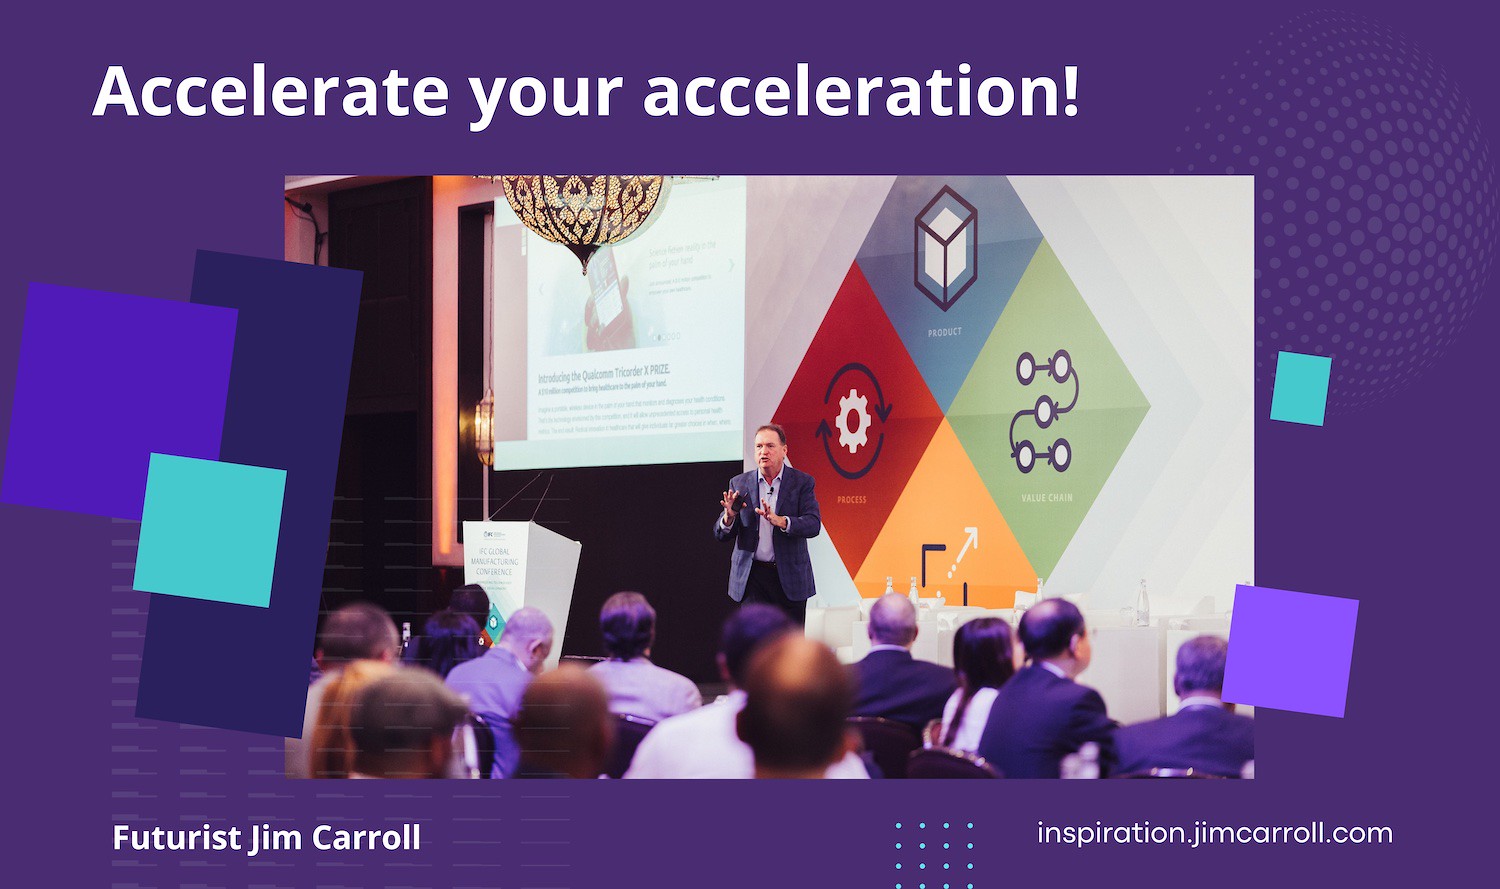 "Accelerate your acceleration!" - Futurist Jim Carroll